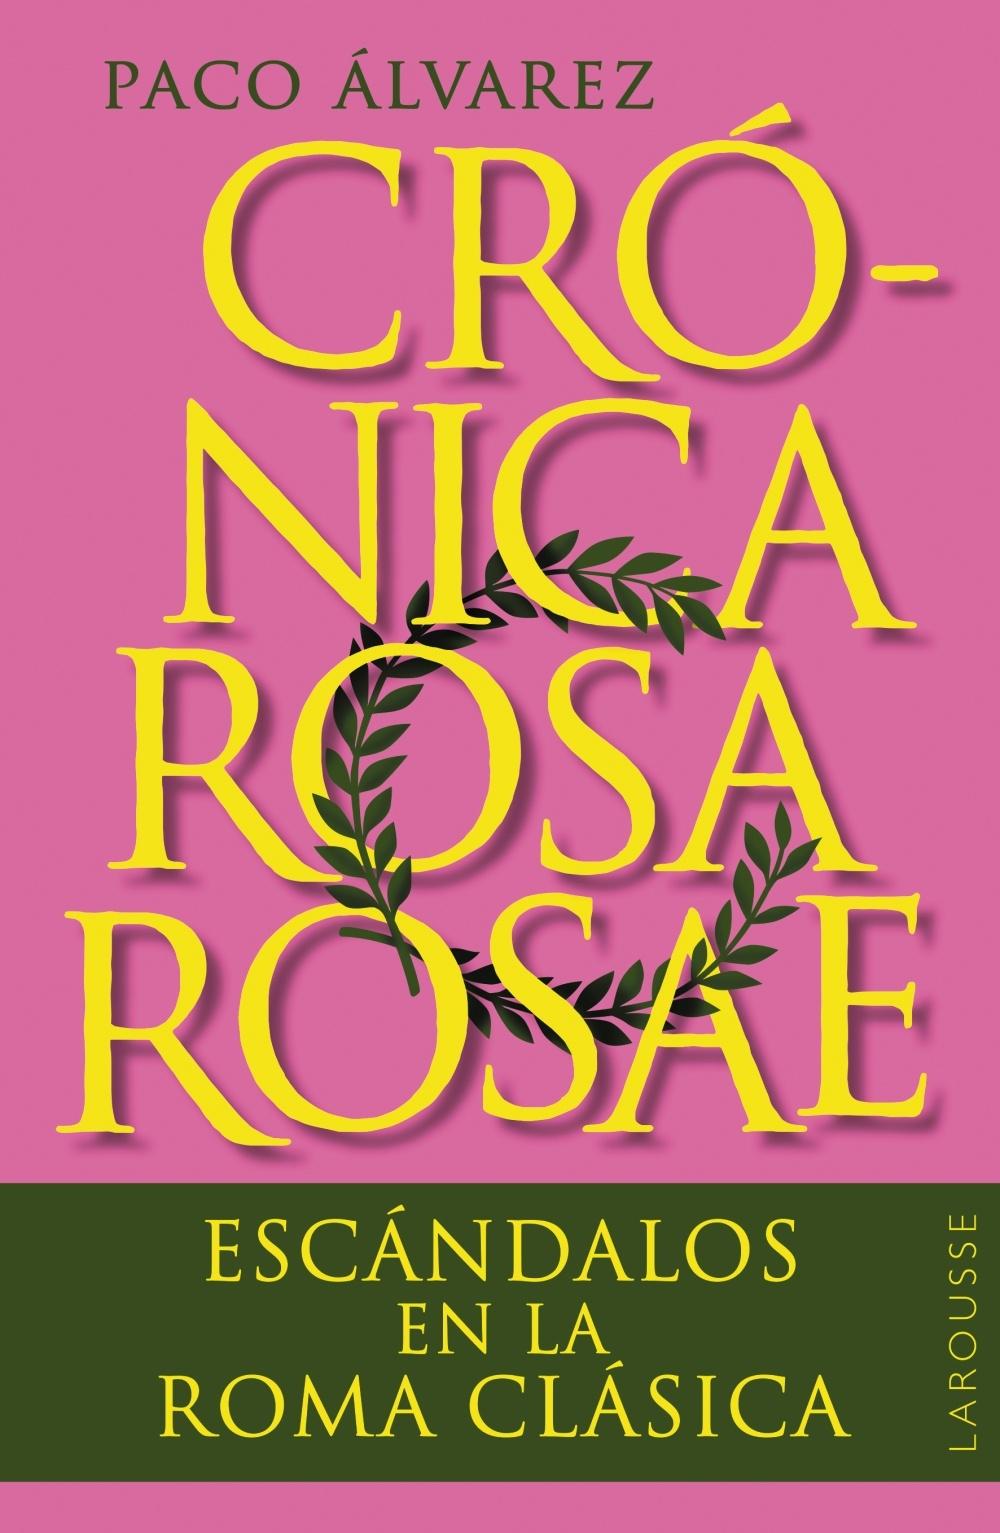 Crónica Rosa Rosae "Escándalos en la Roma Clásica"